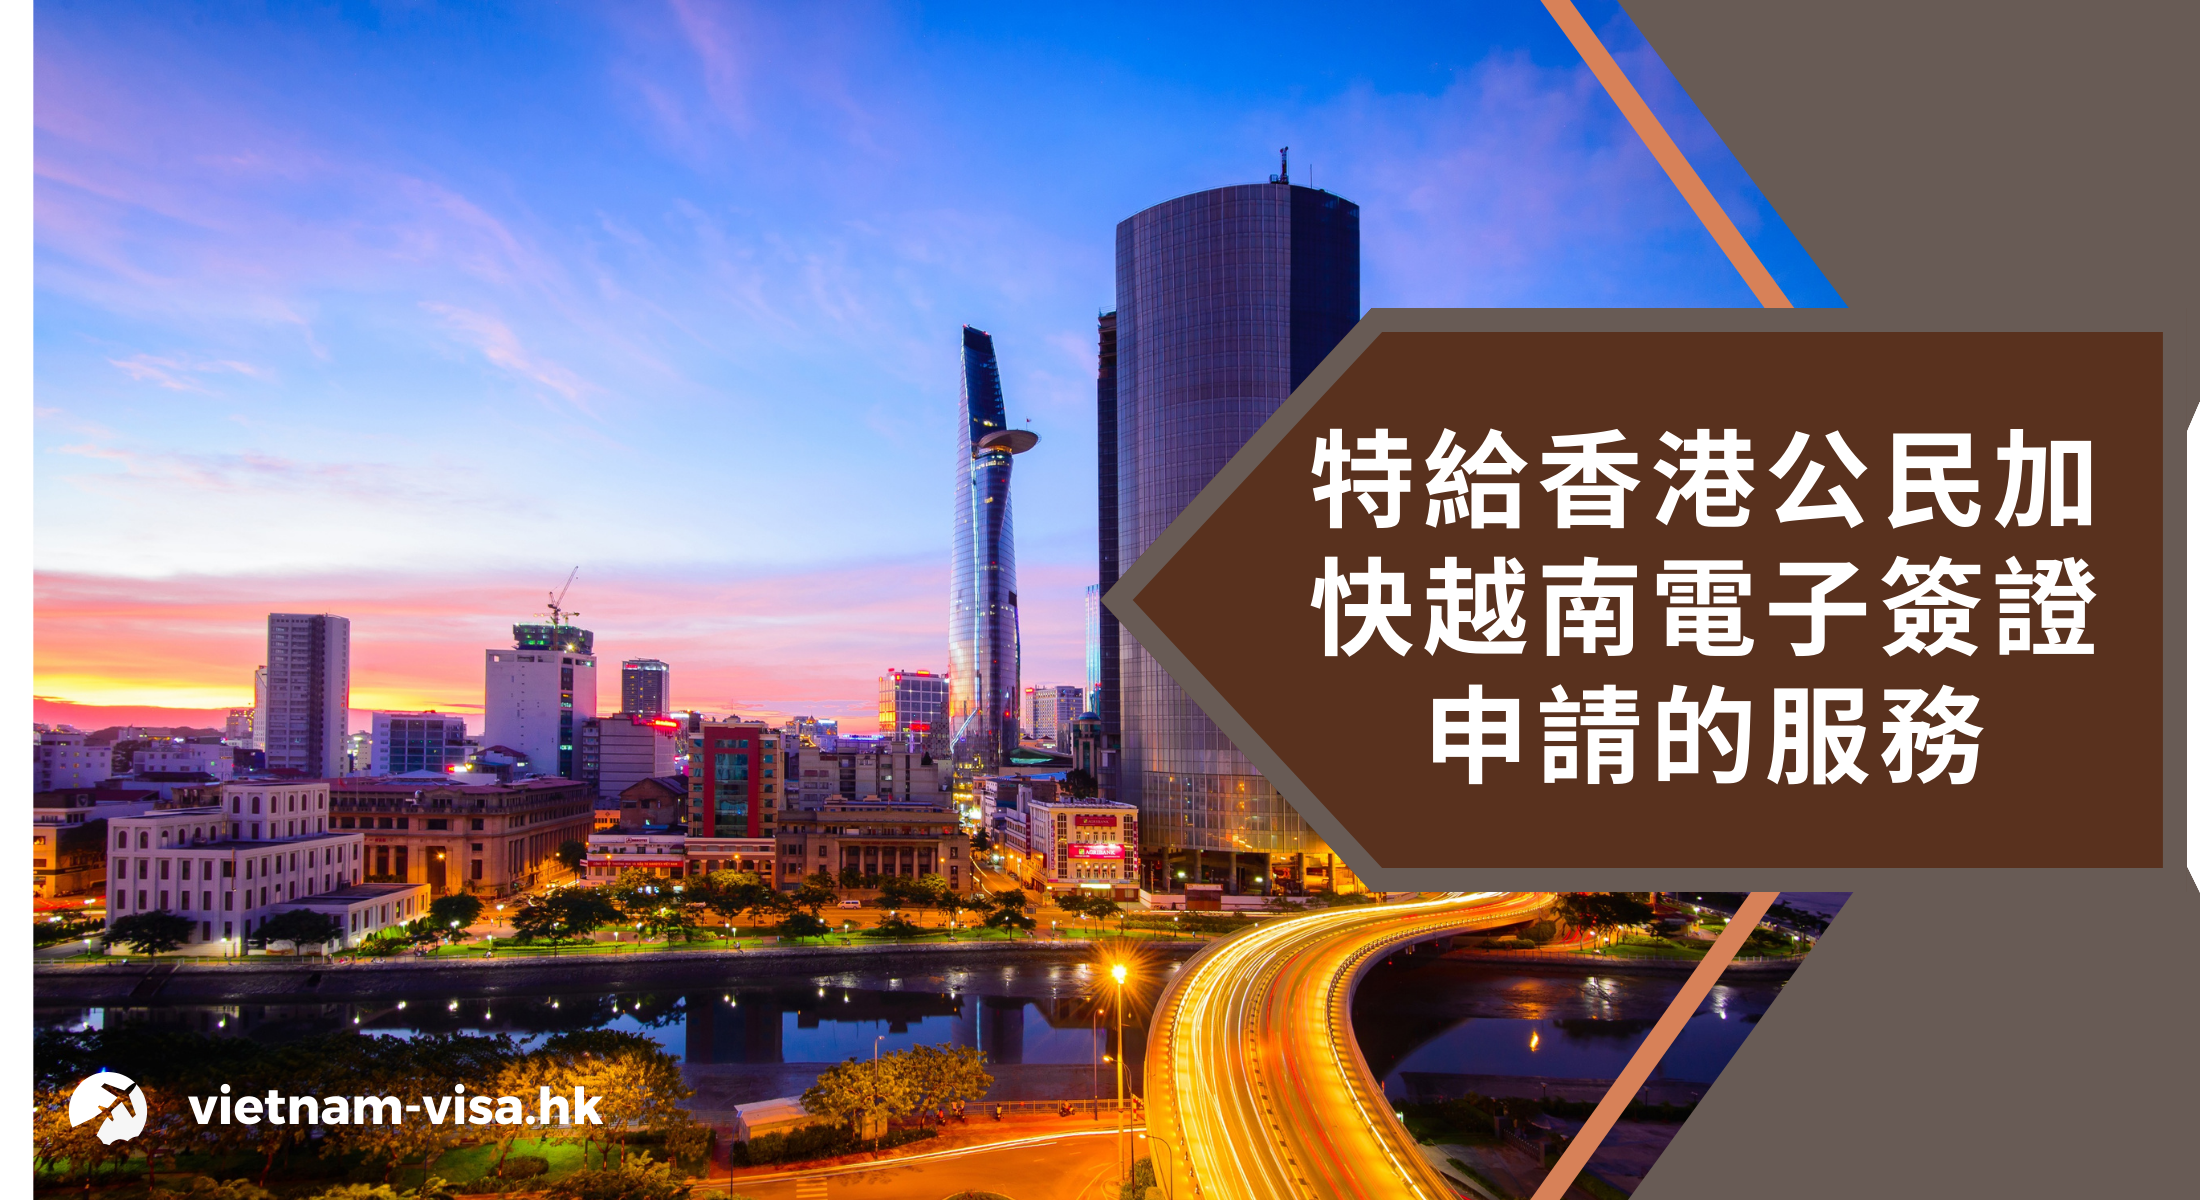 特給香港公民加快越南電子簽證申請的服務